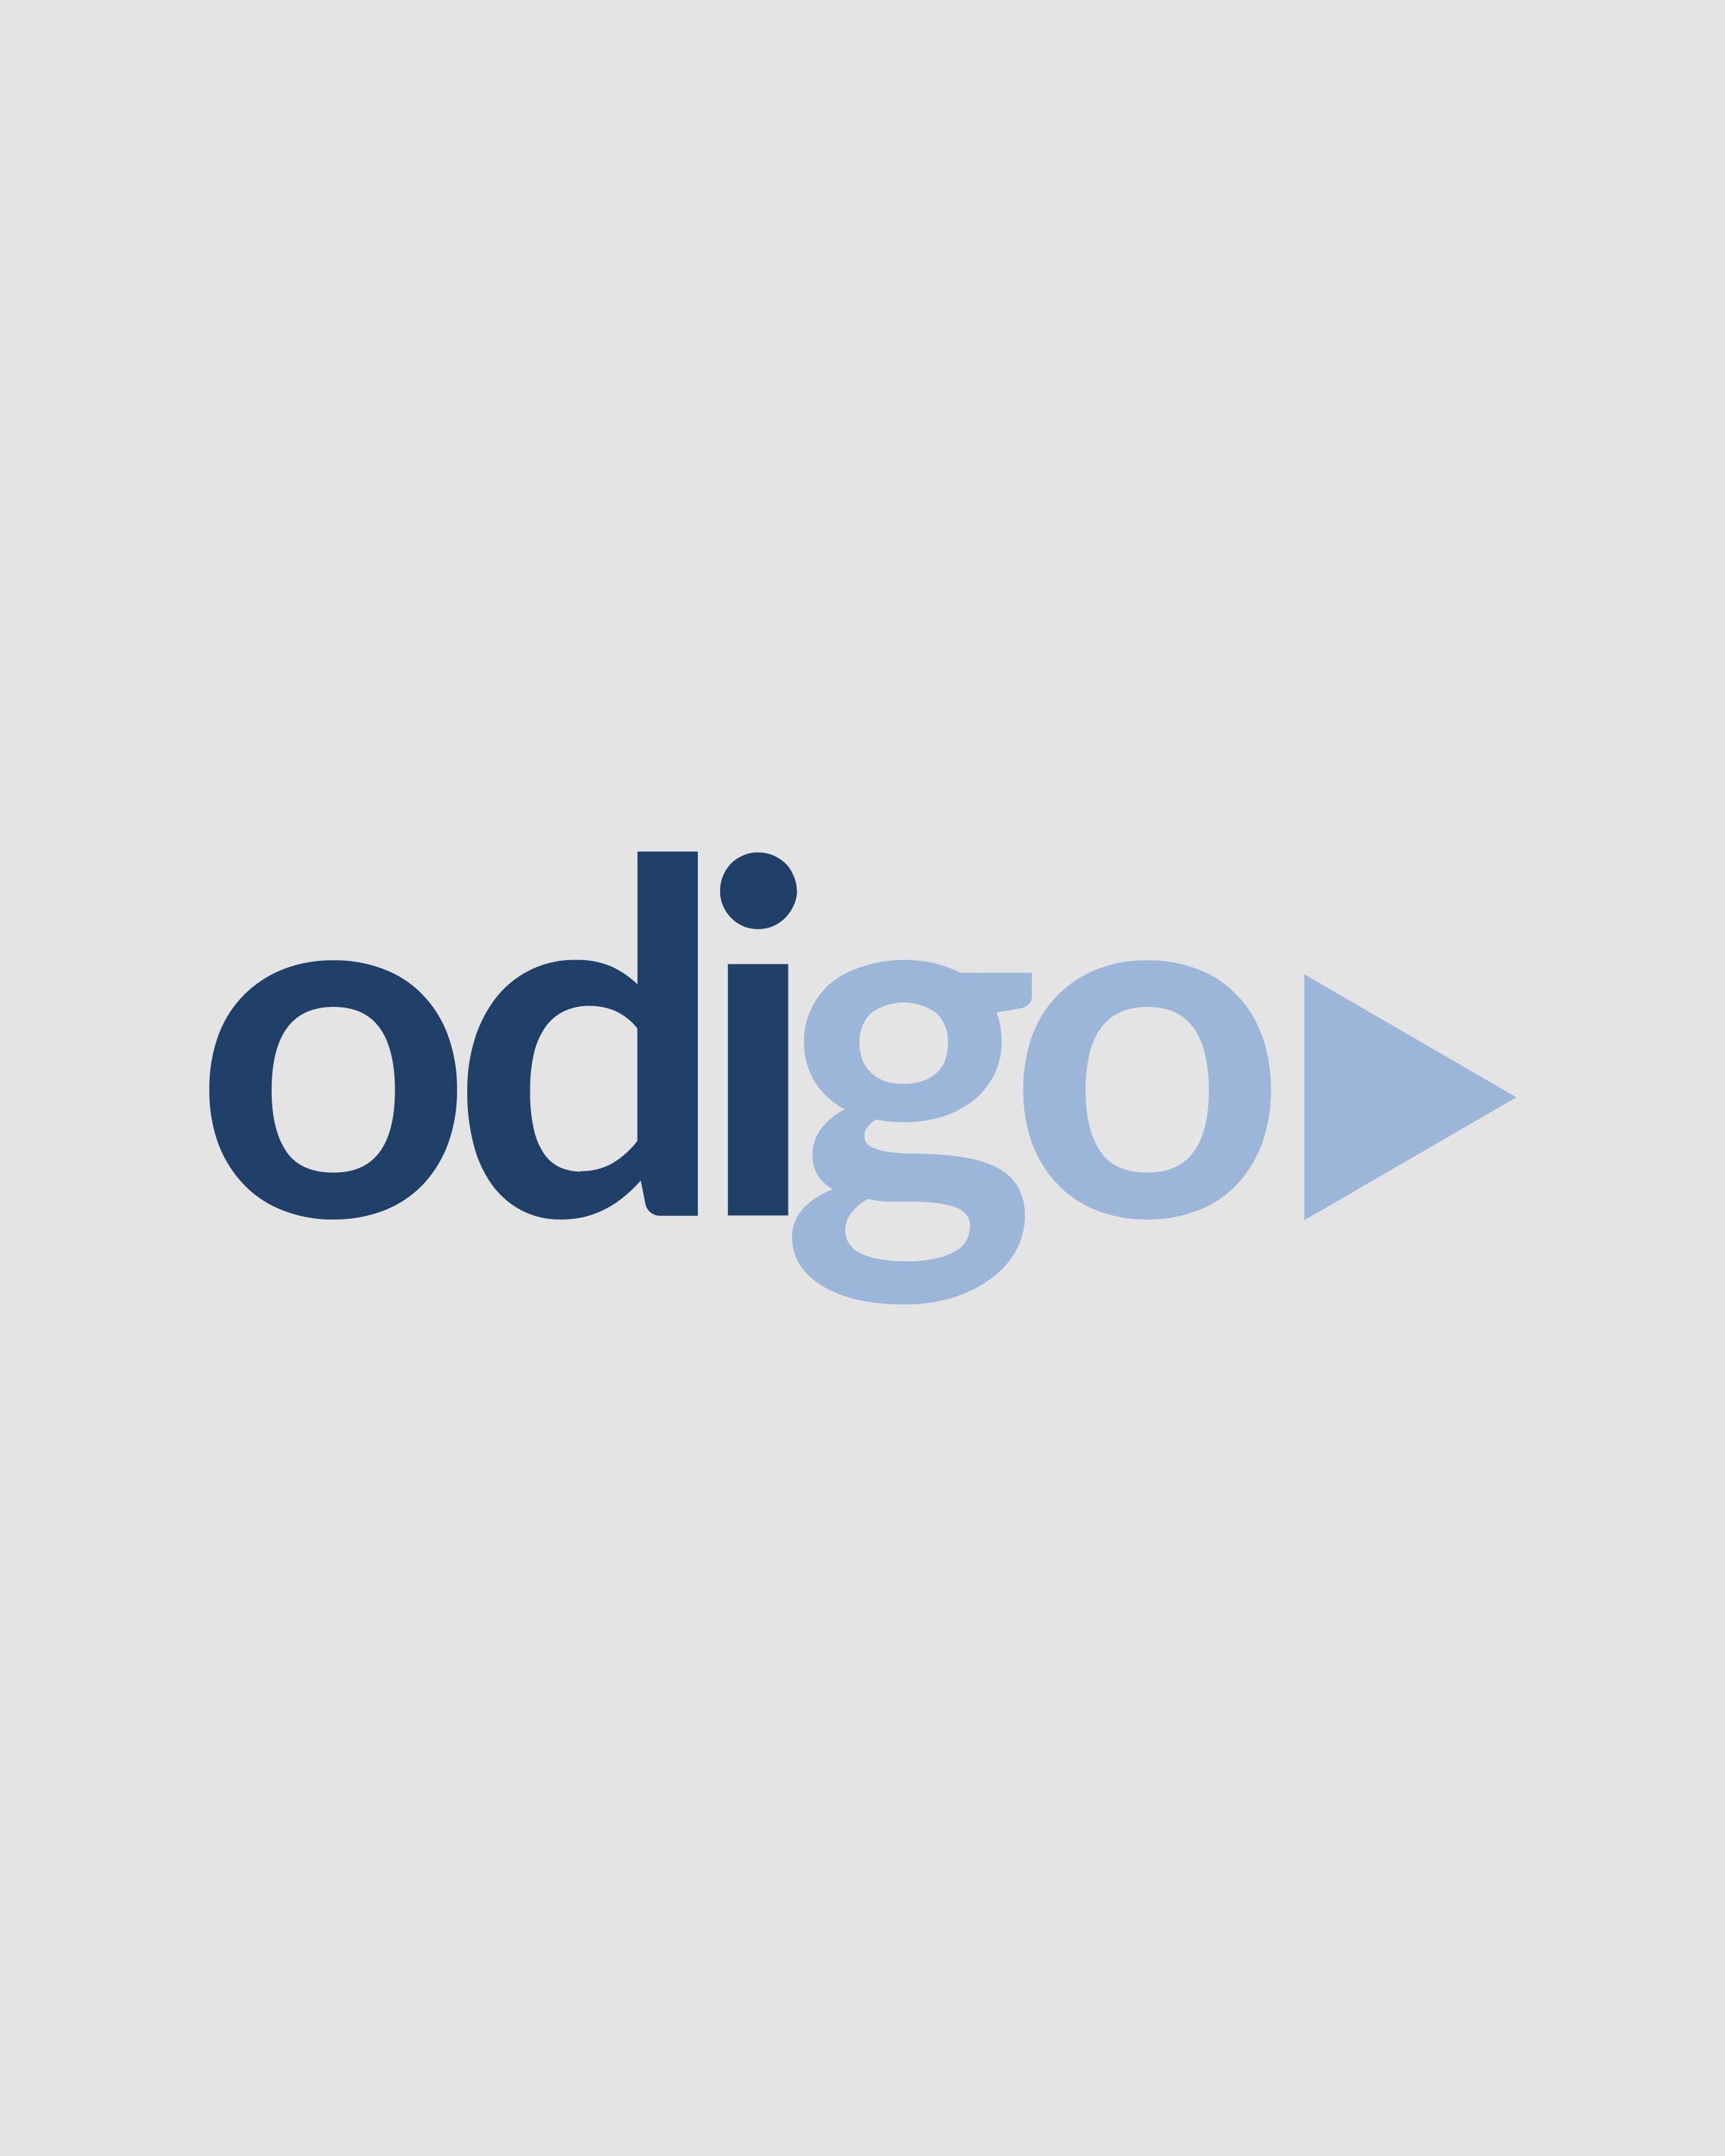 The Odigo Group